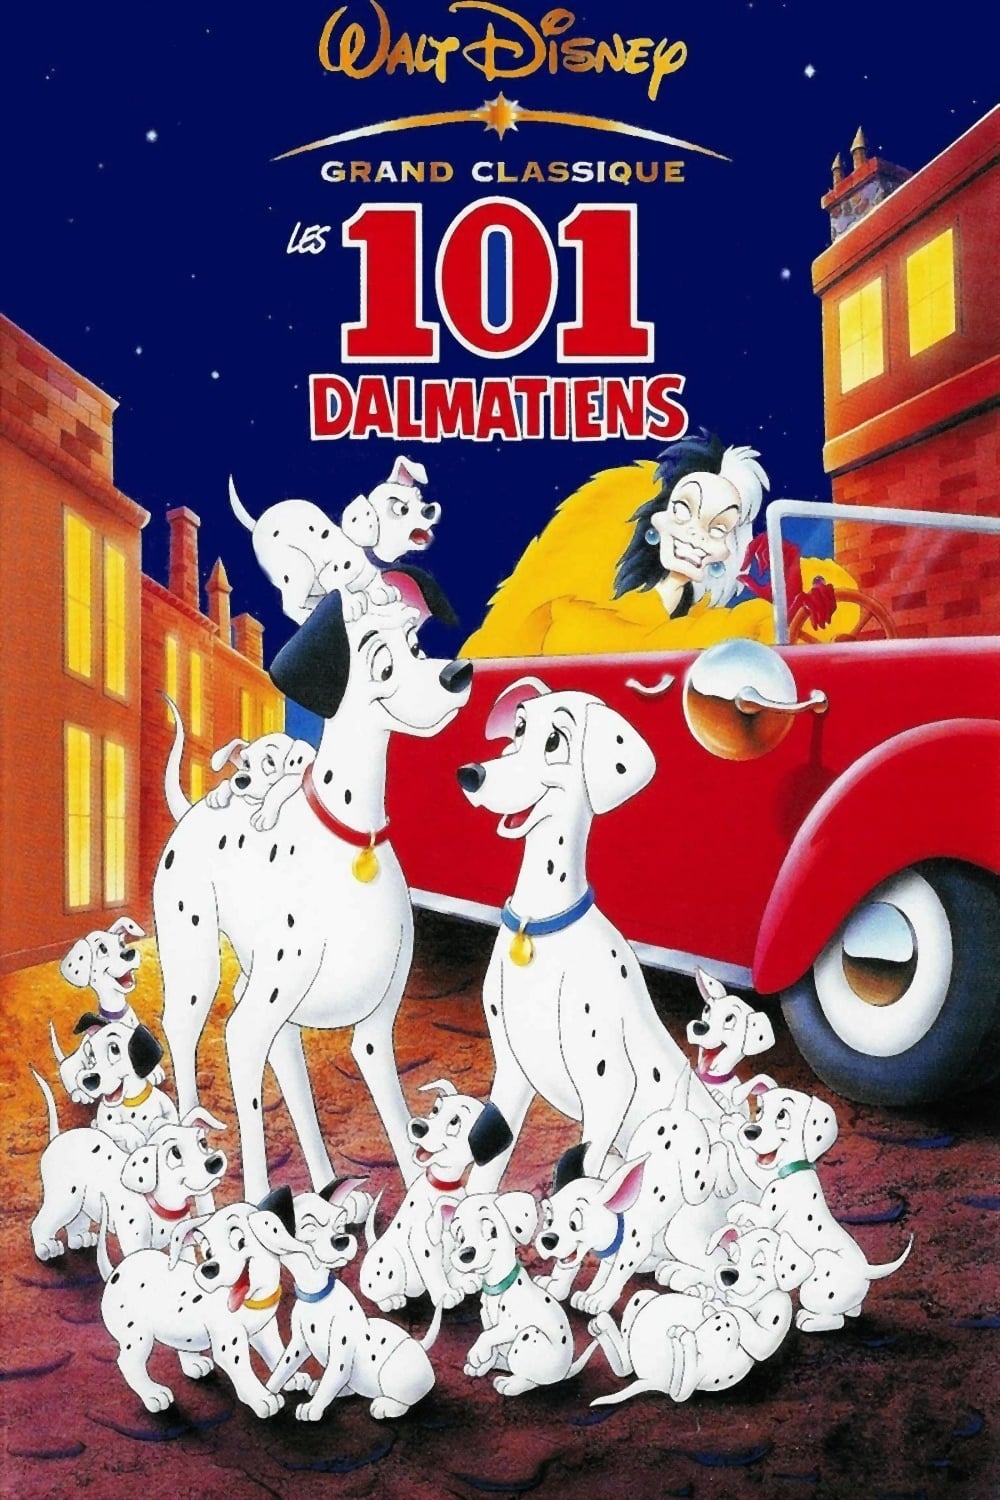 101 Dalmatians (1961) Poster - Дисней фото (43214002) - Fanpop